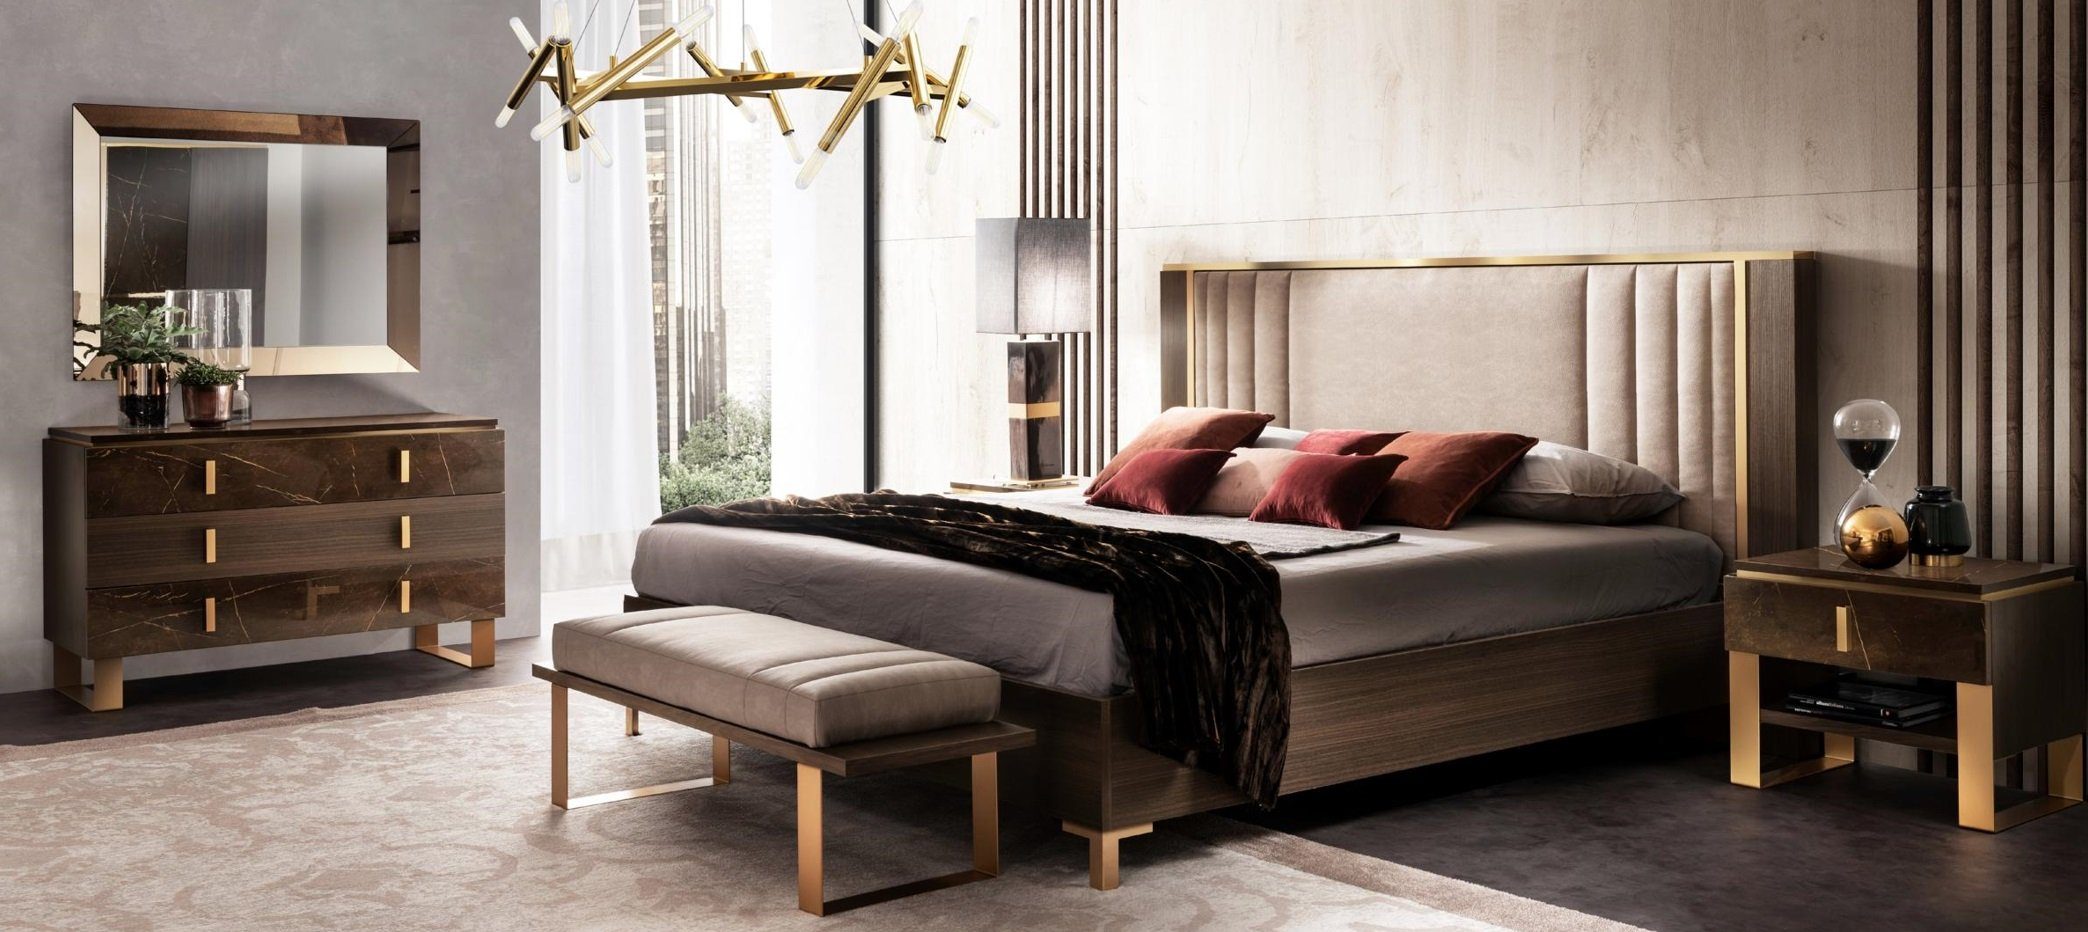 JVmoebel Schlafzimmer-Set Luxus Schlafzimmer Sets Nachttisch Design Klassischer 3tlg 2x Bett